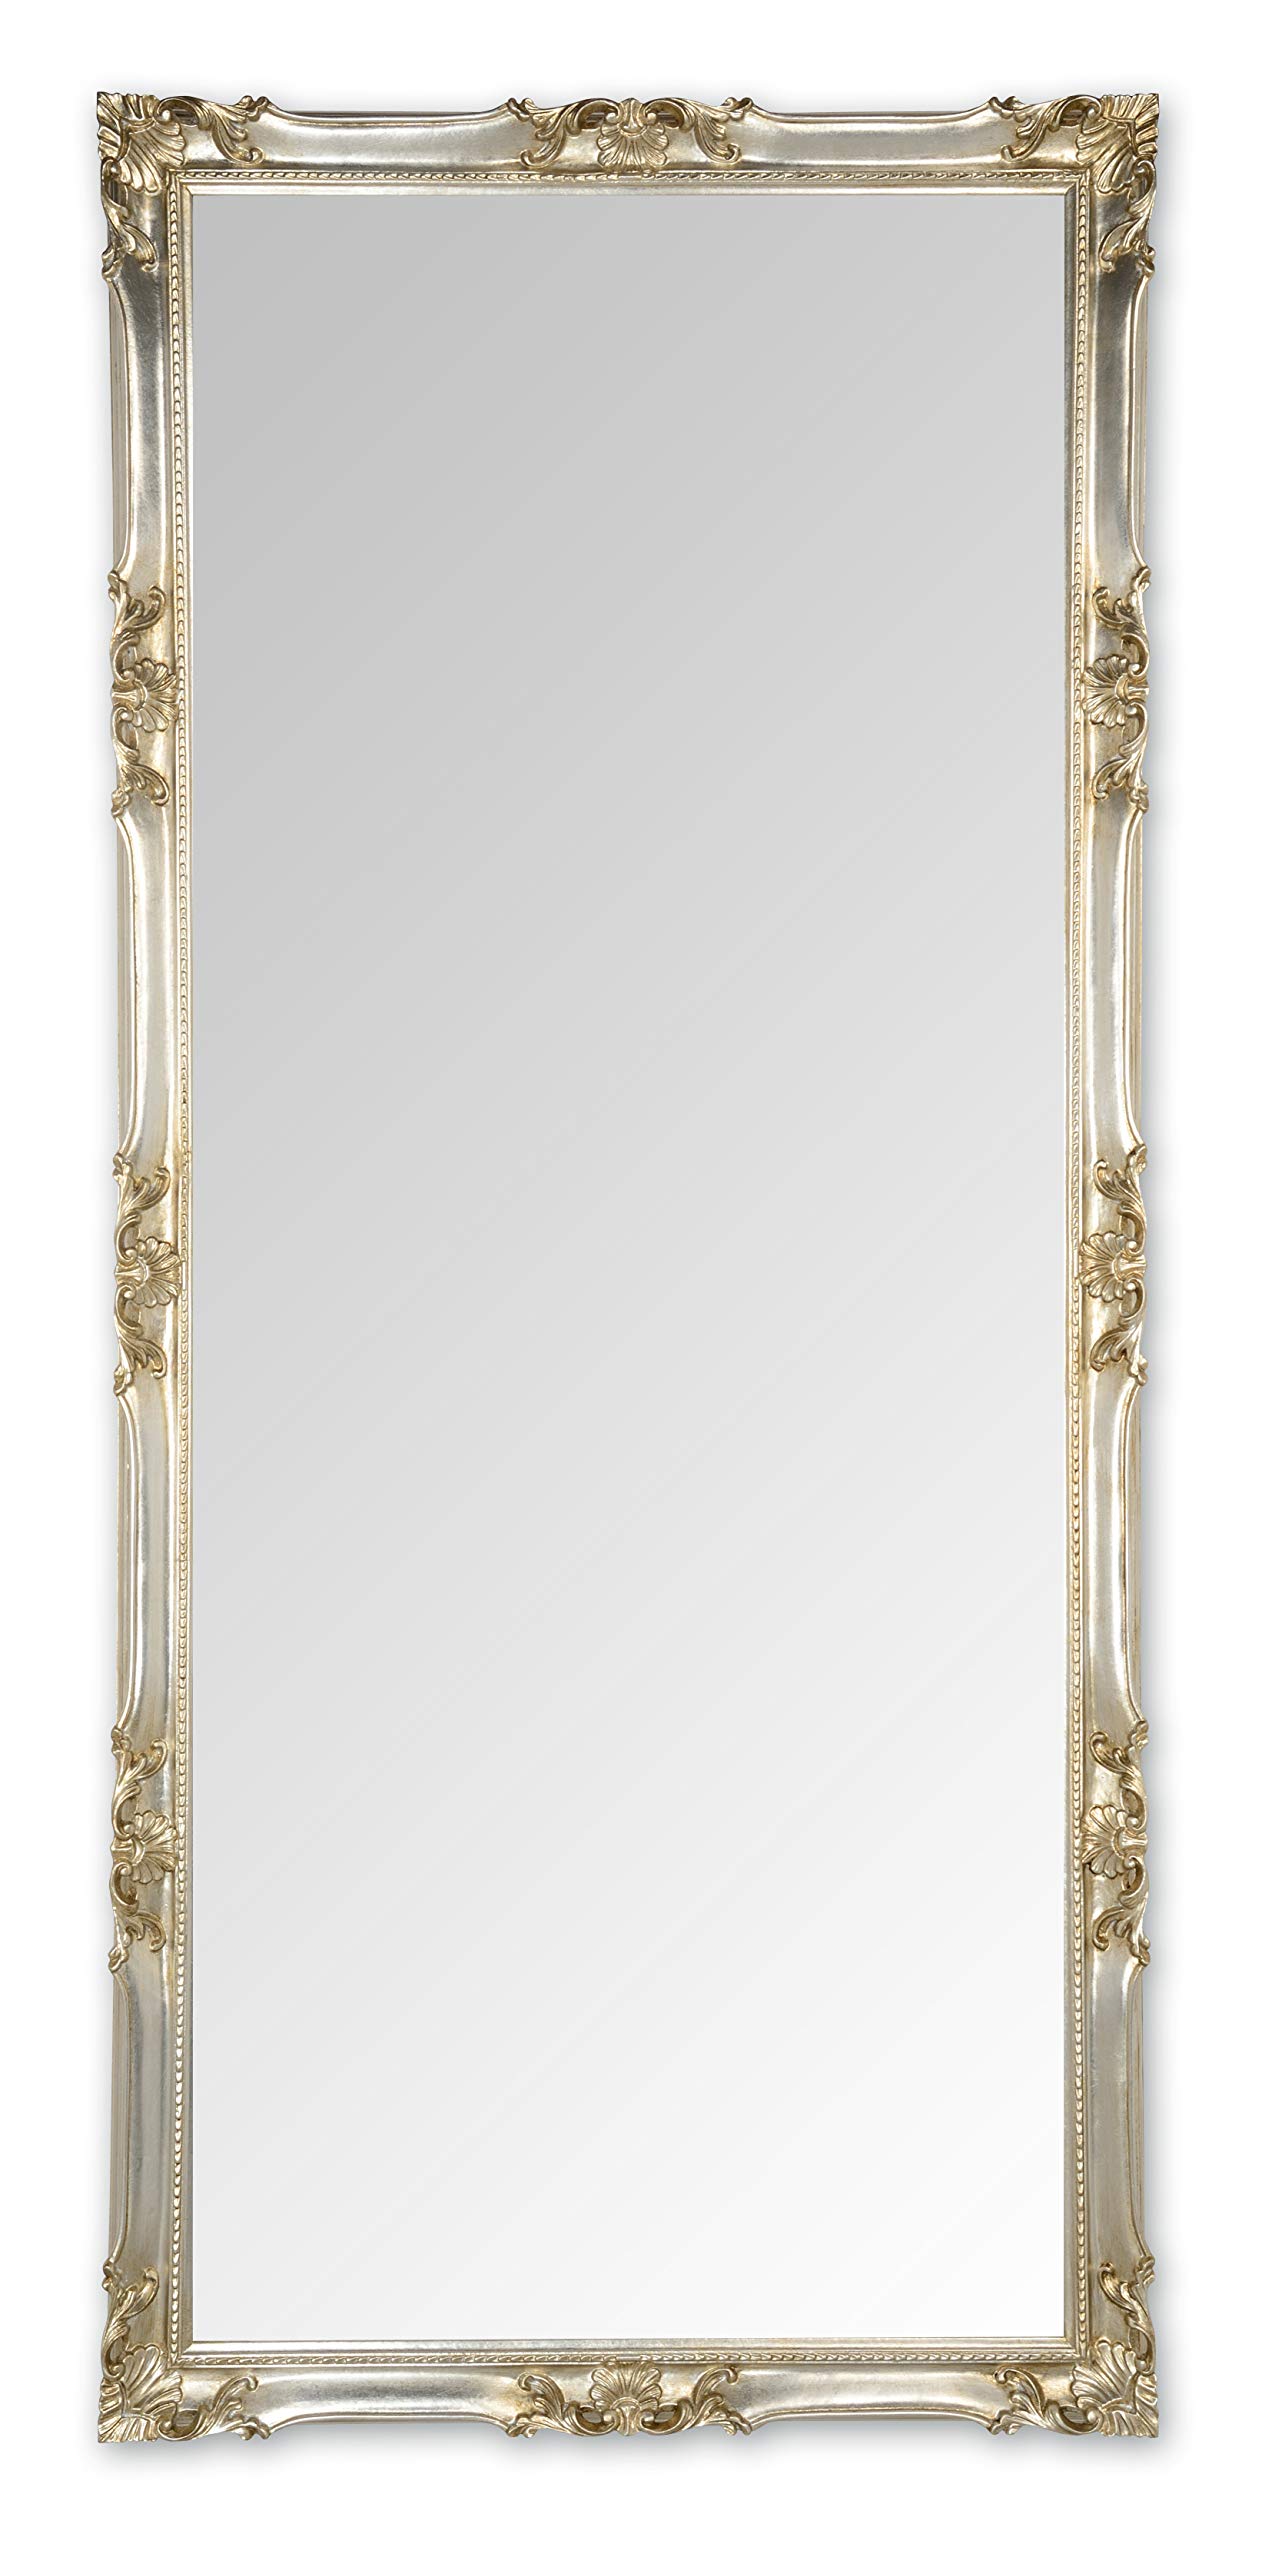 MO.WA Wandspiegel groß Spiegel klassisch Barock 82x182 Blattsilber Ganzkörperspiegel Klassischer Lehnspiegel Bodenspiegel Großer Spiegel mit Holzrahmen Silber Antik Klassisch